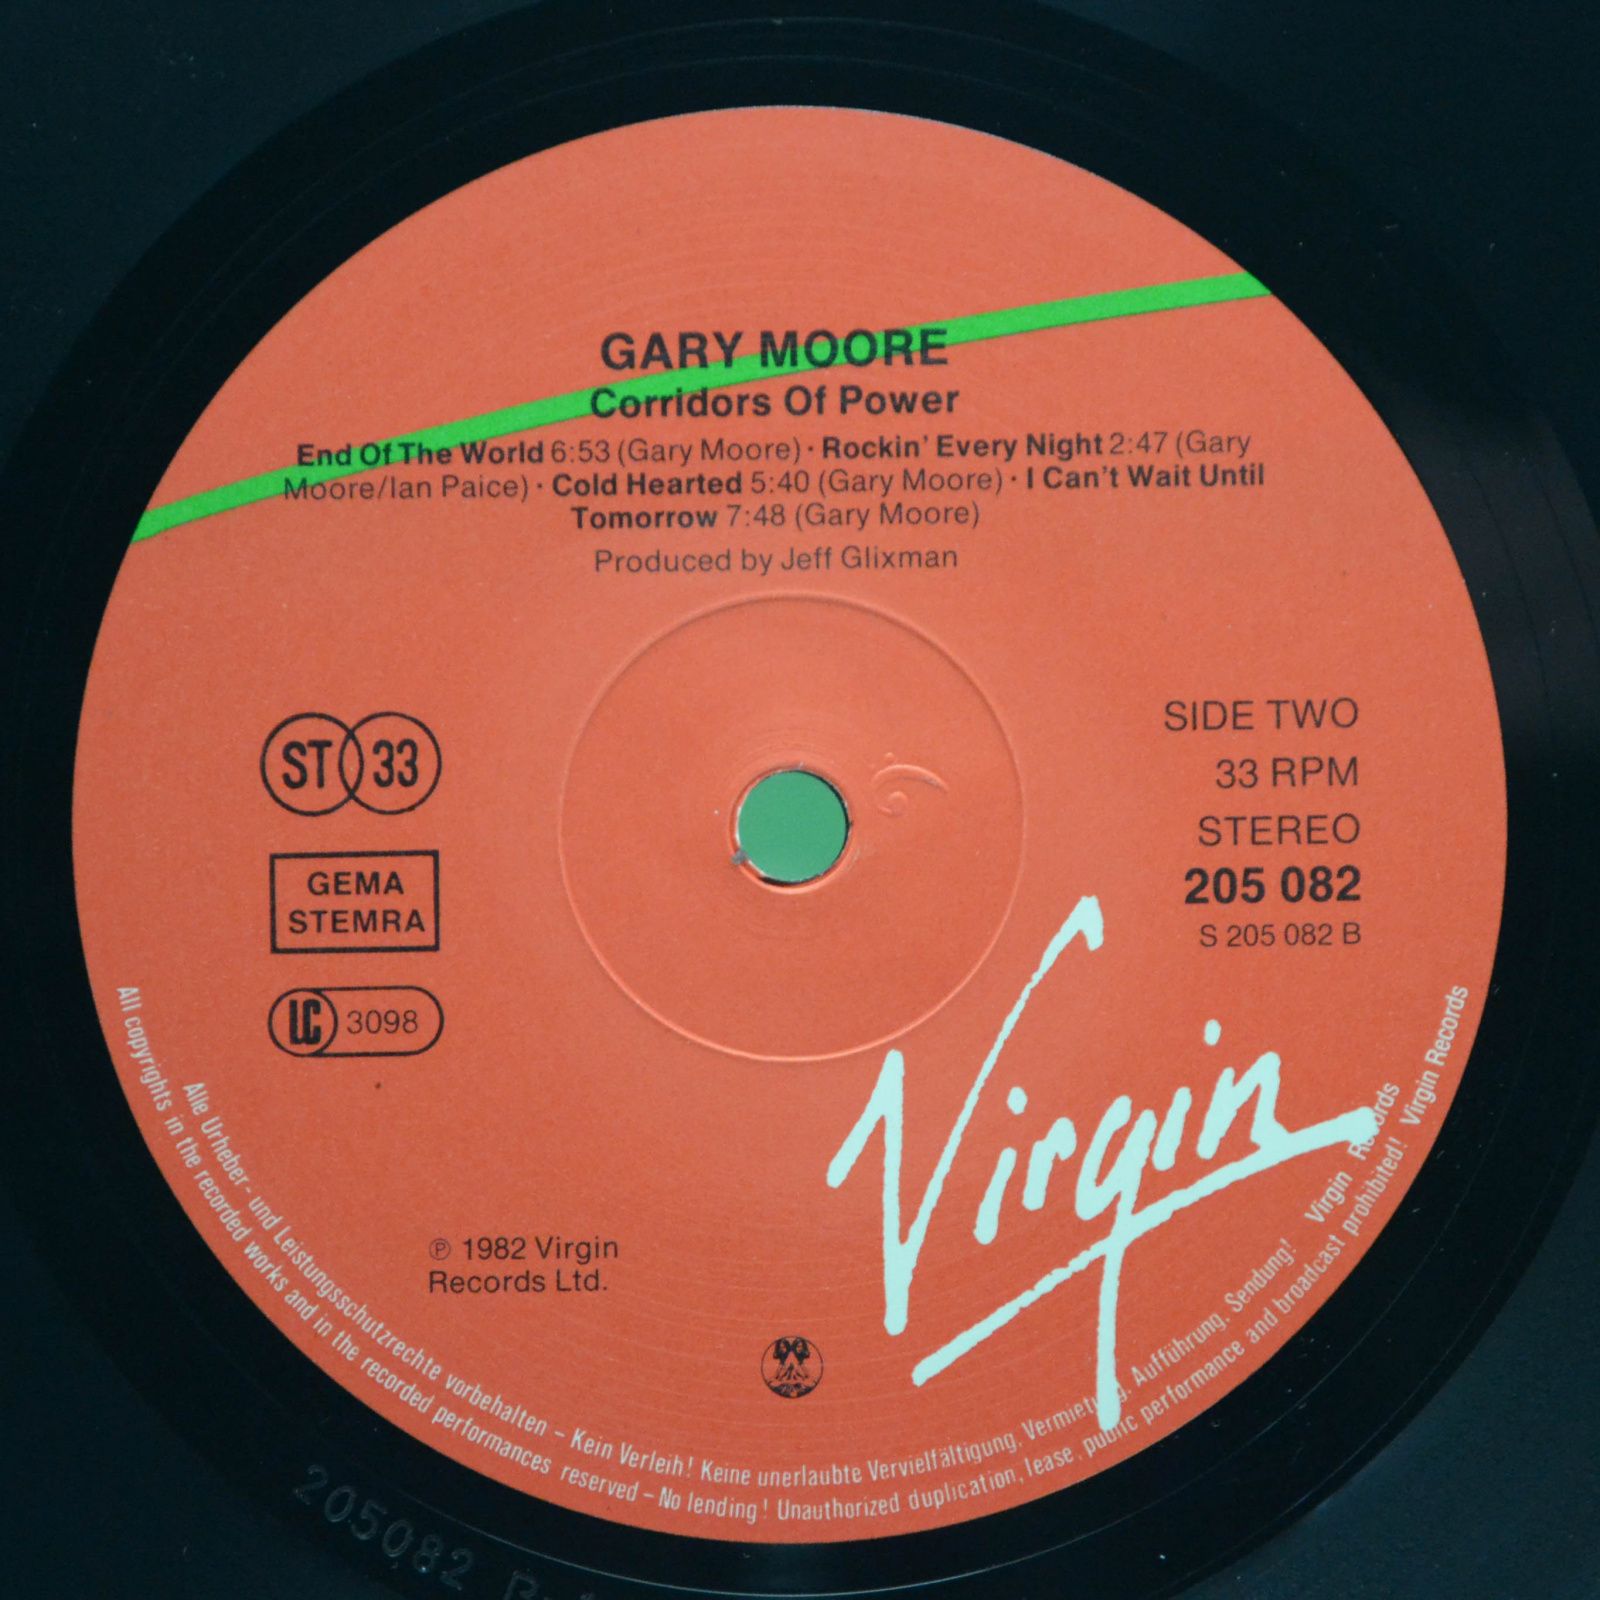 Gary Moore — Corridors Of Power, 1982